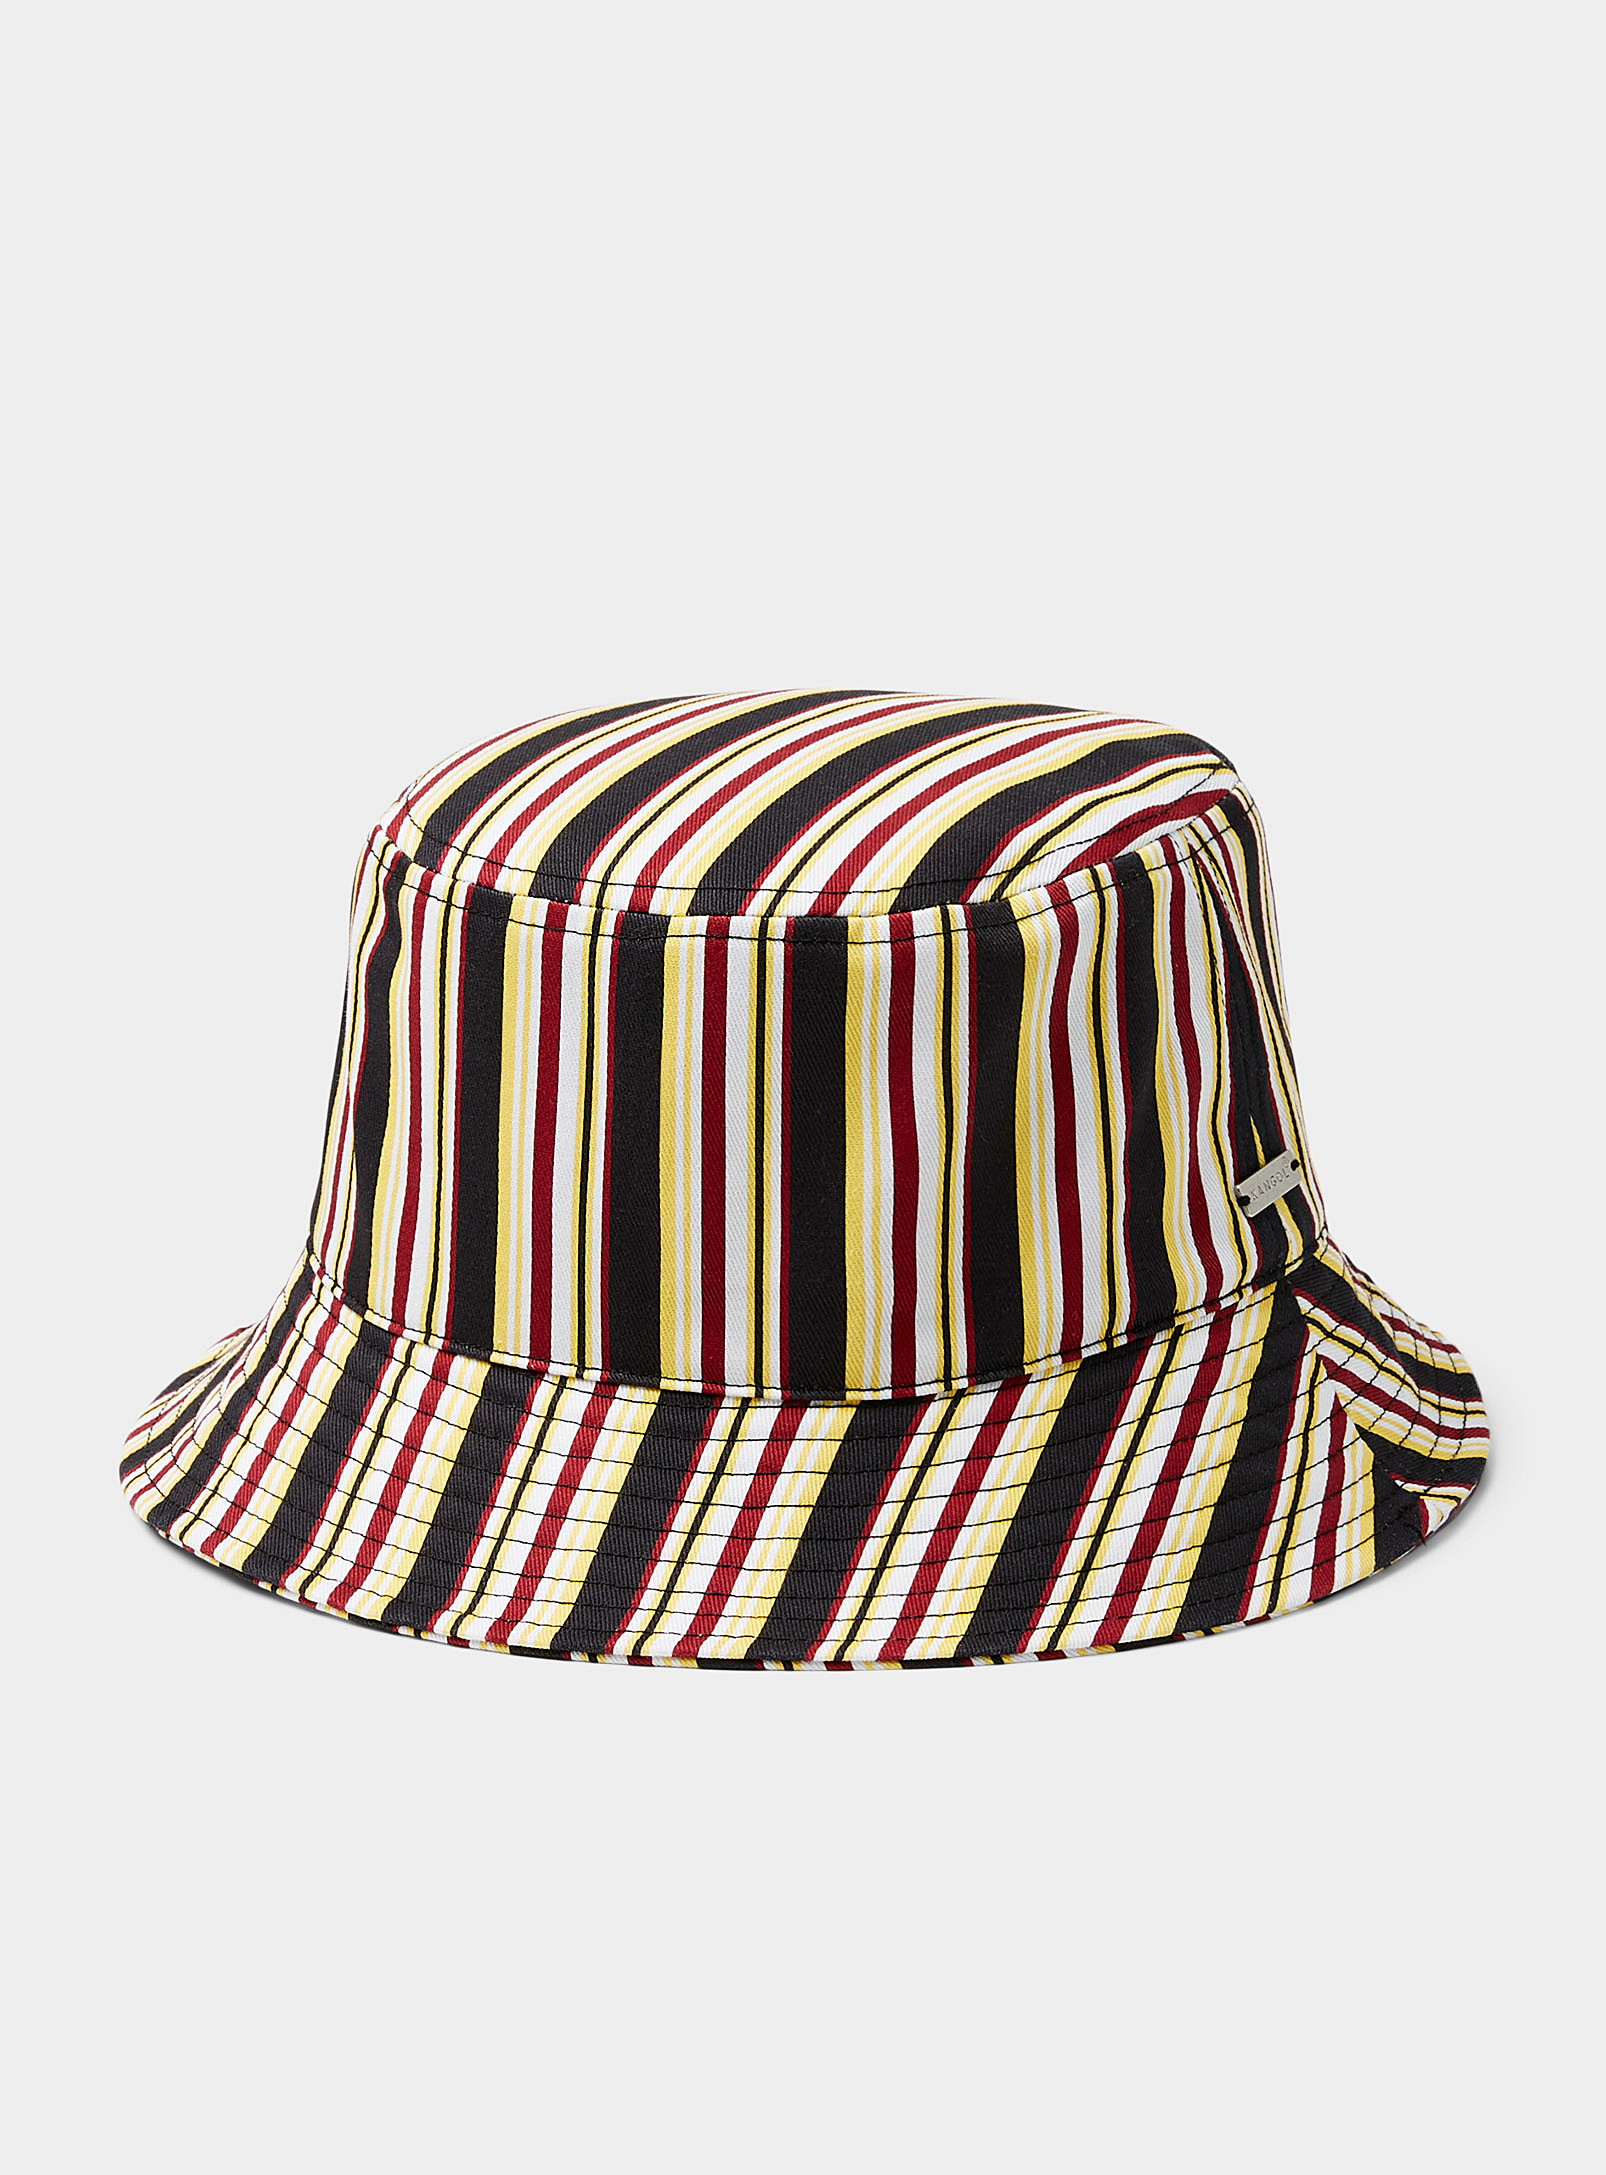 Kangol Retro Stripe Bucket Hat In Patterned Black